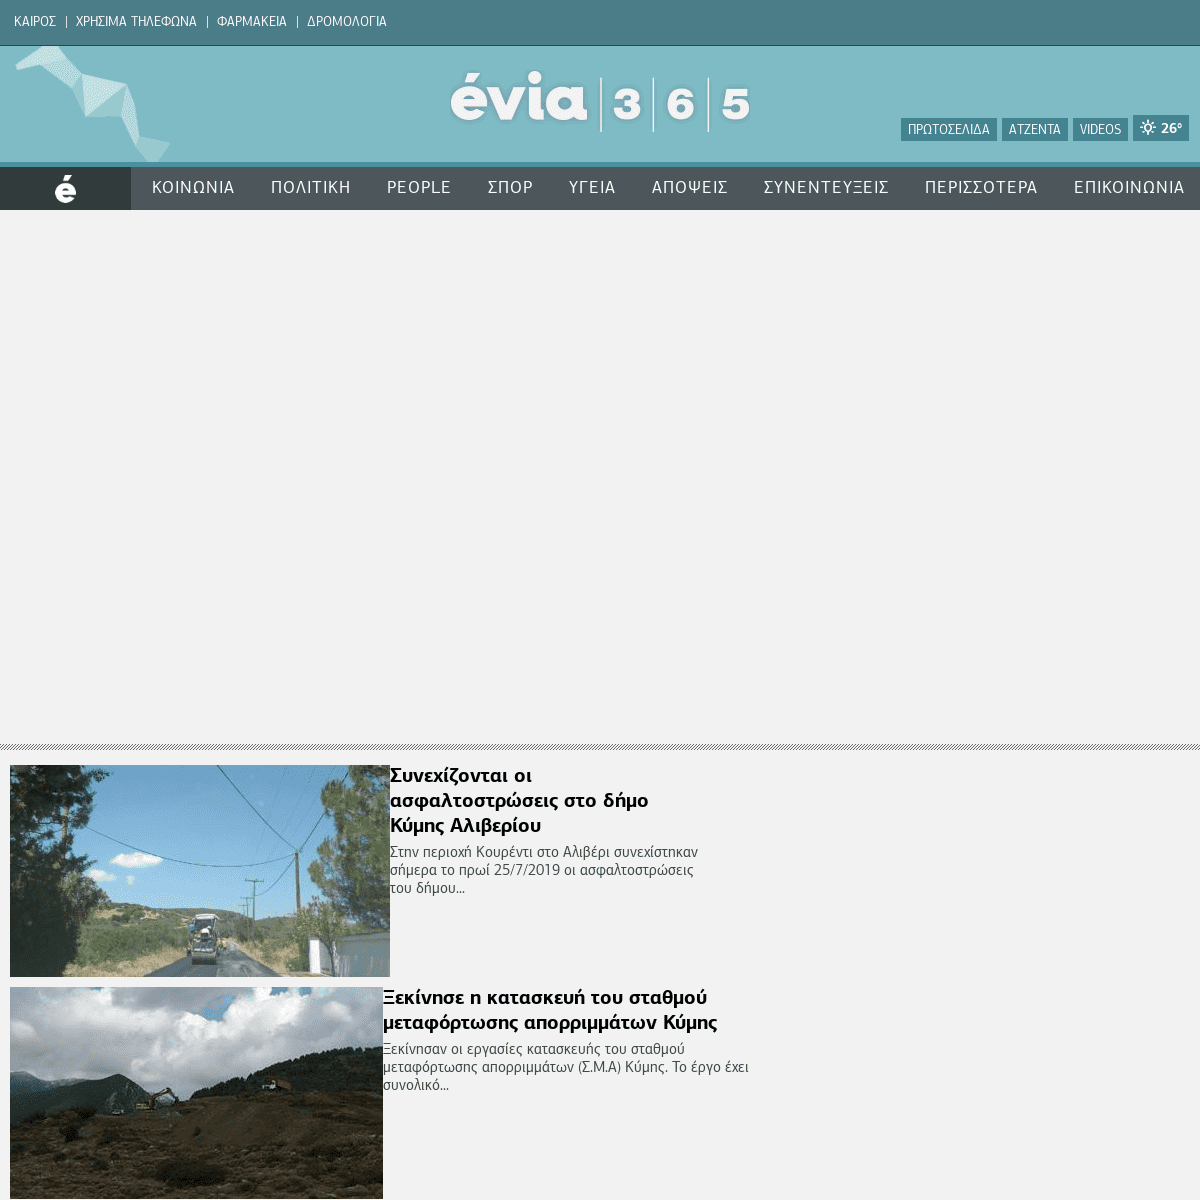 EVIA365